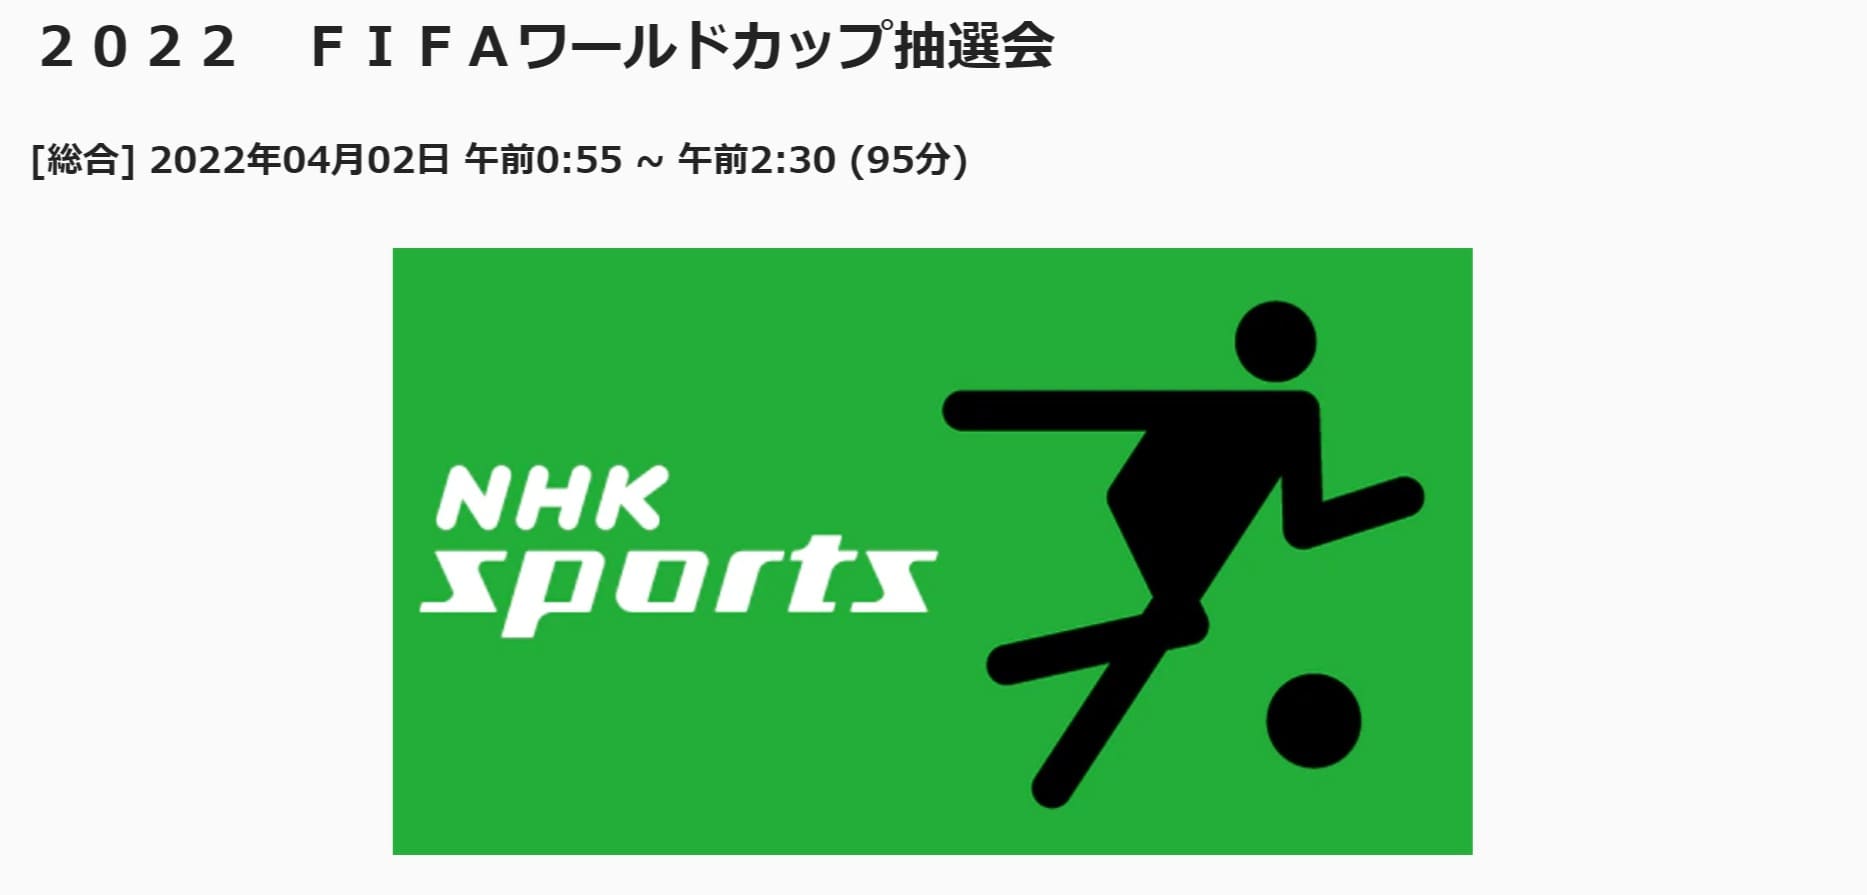 2022FIFAワールドカップ組み合わせ抽選会‗NHK総合での放送 (1)